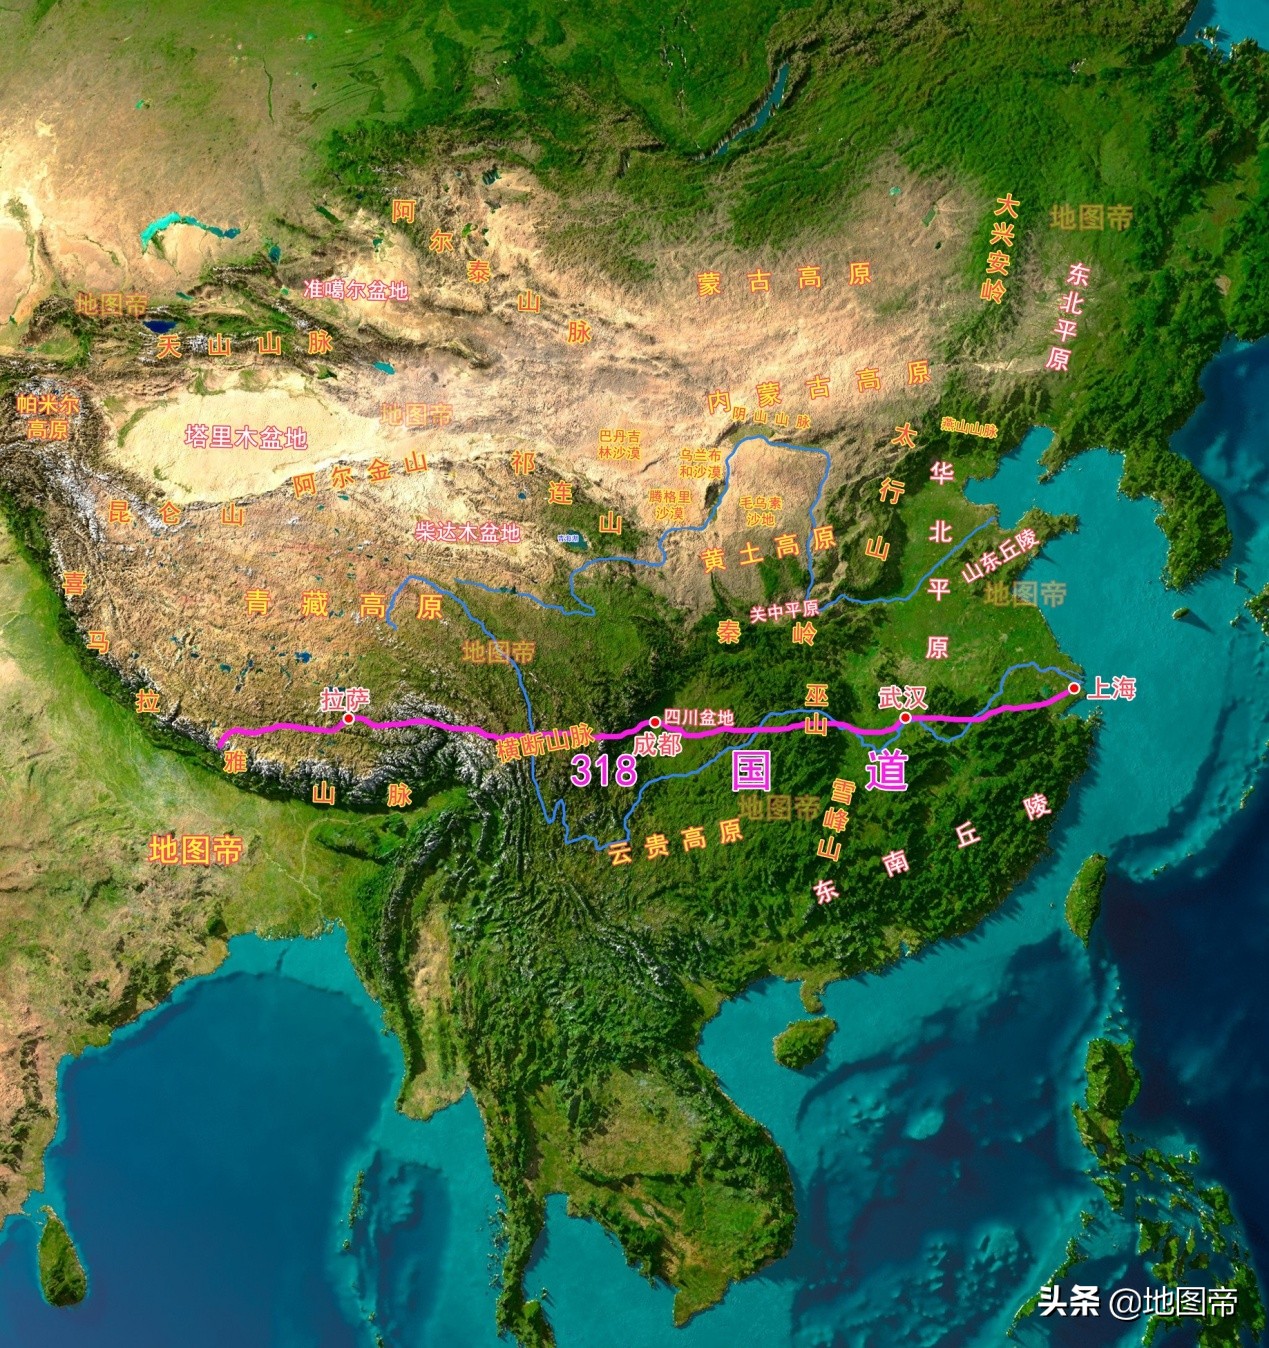 湖北,重庆,四川,西藏八省(市,自治区),全长5476公里,是我国最长的国道